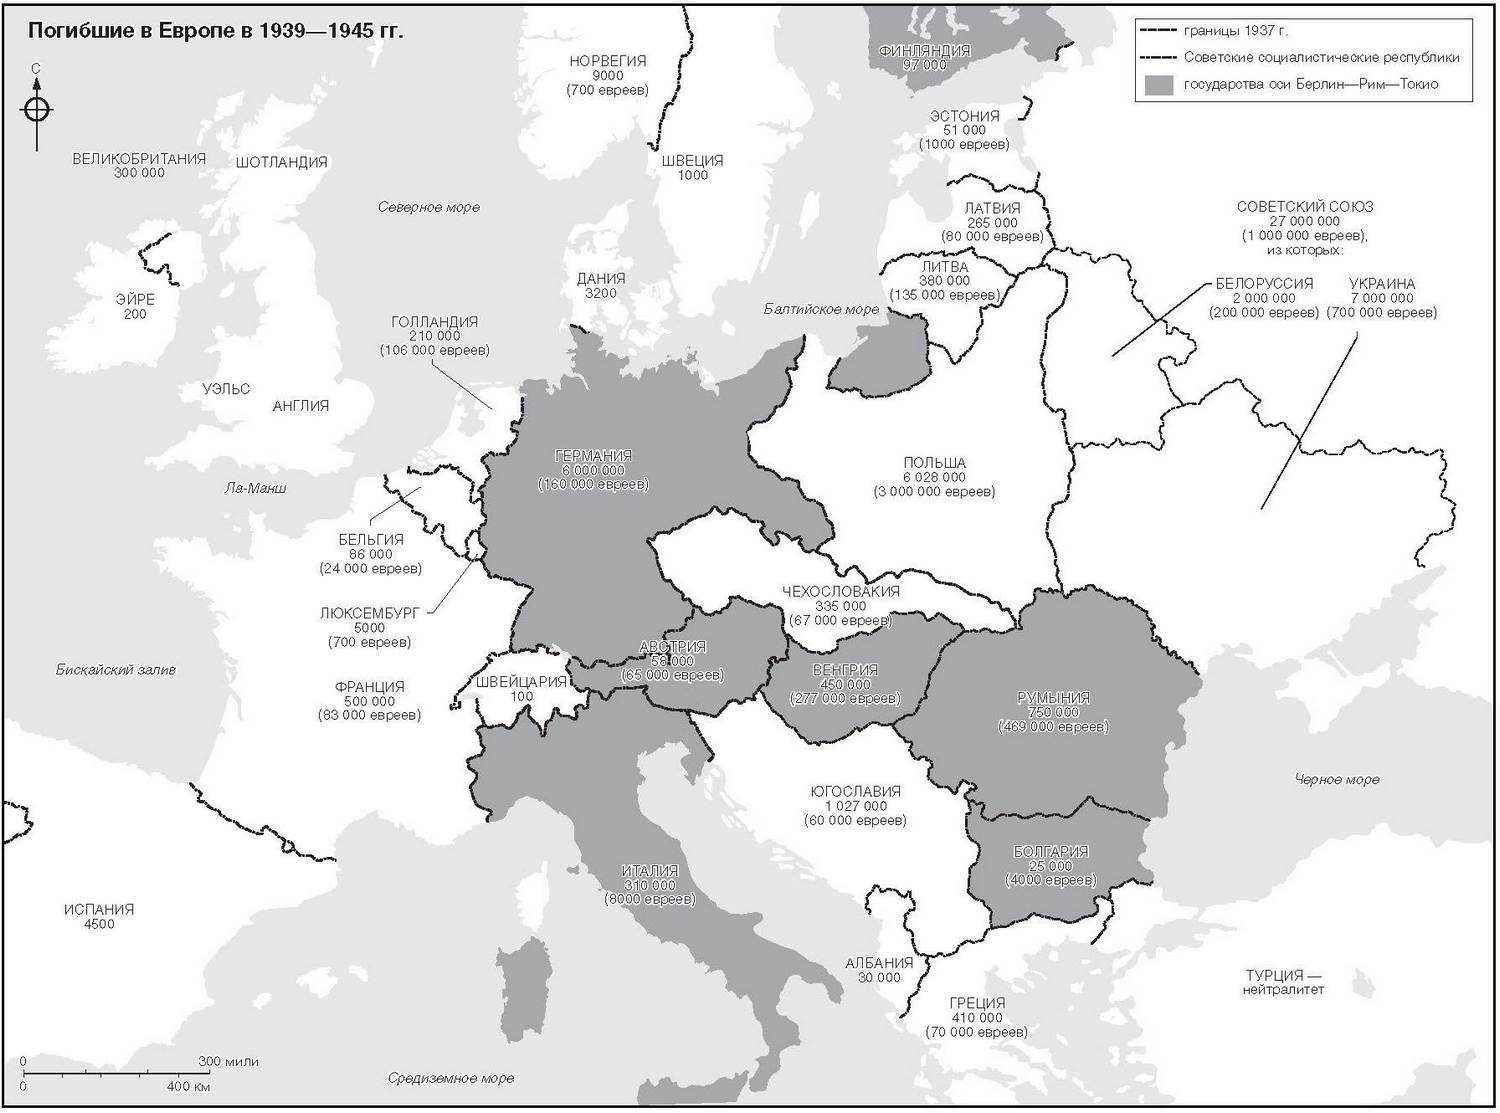 Карта европы в 1939 году